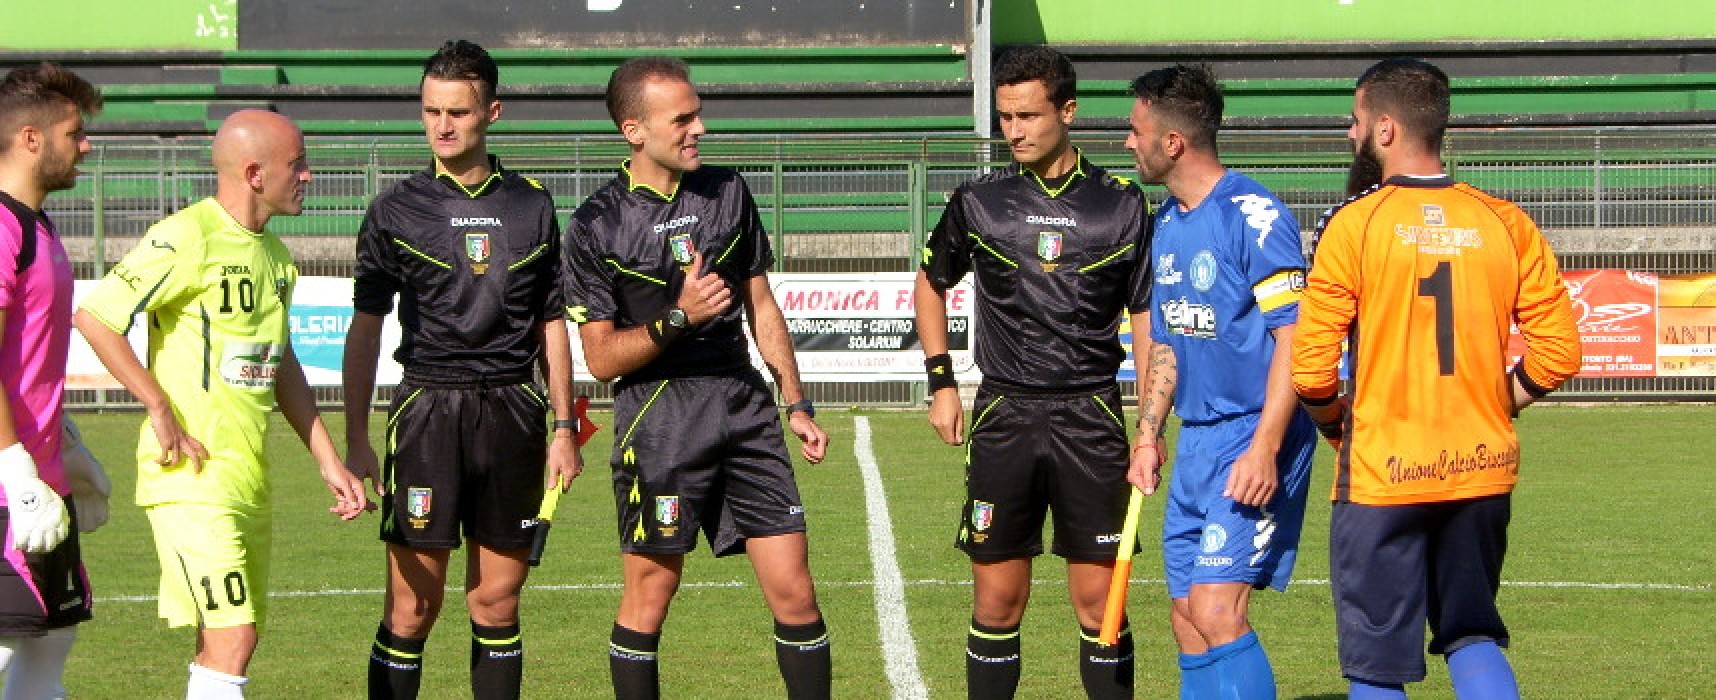 Coppa Italia, match decisivo per l’Unione Calcio a Bitonto: in palio l’accesso alle semifinali